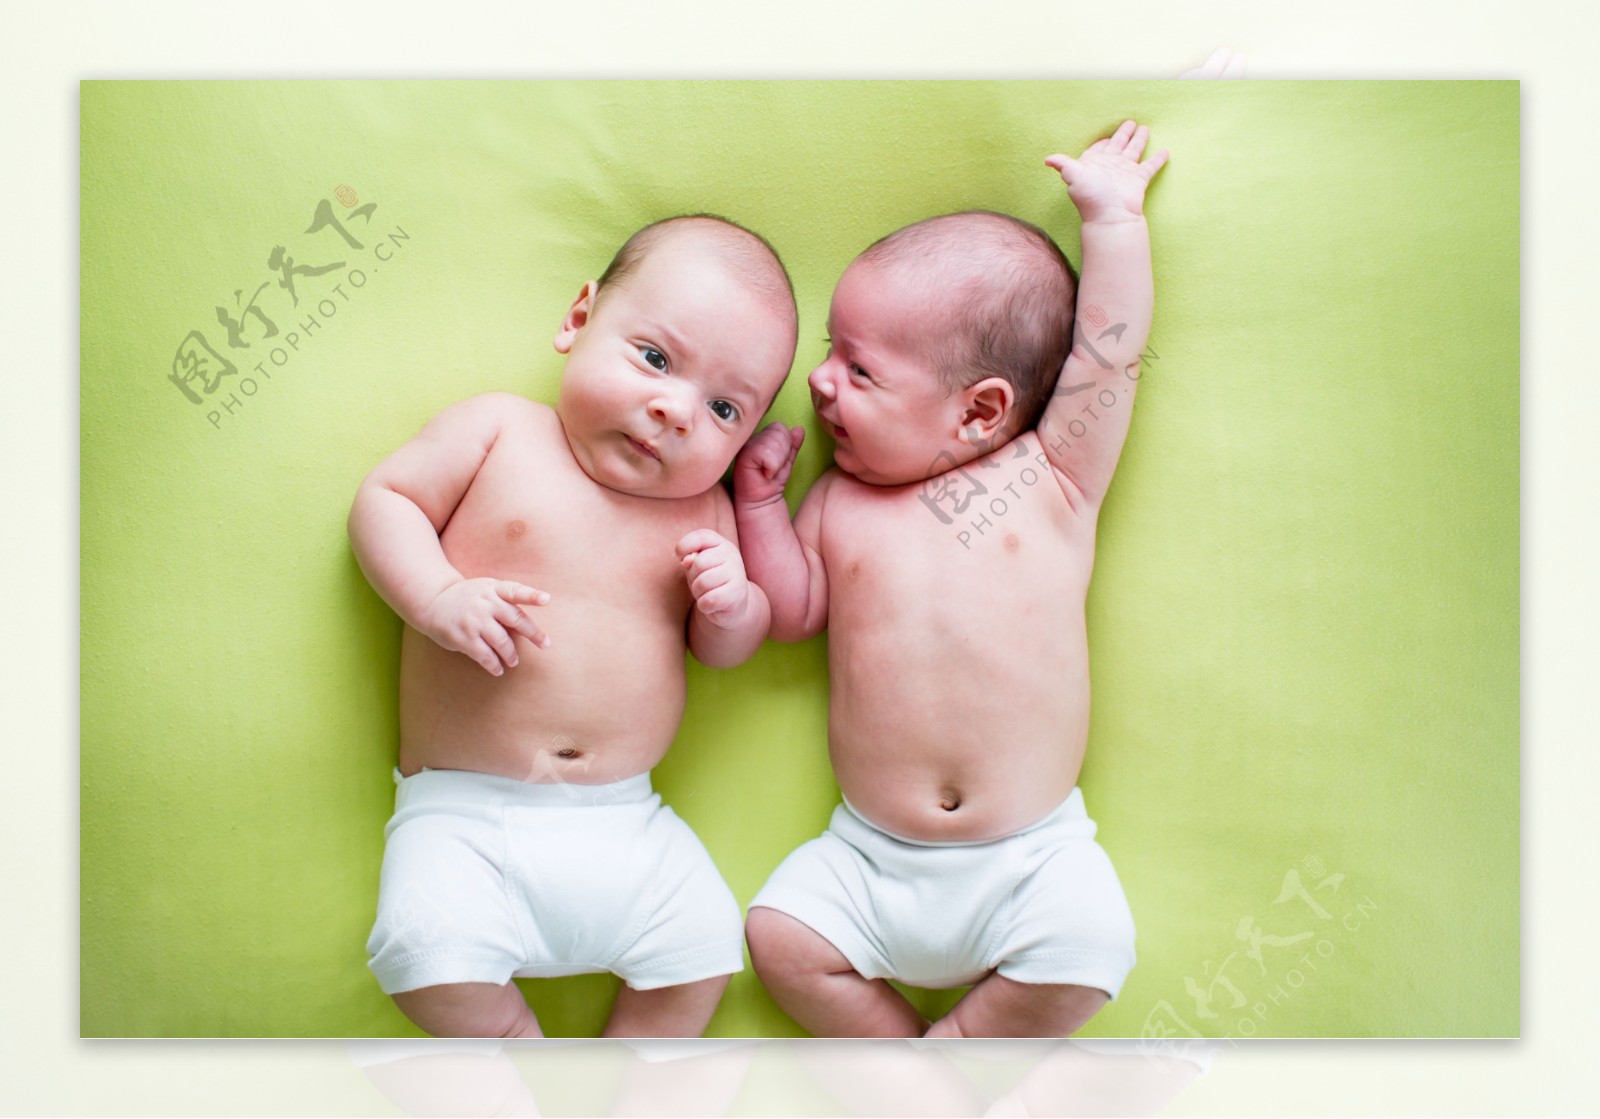 可爱双胞胎婴儿图片